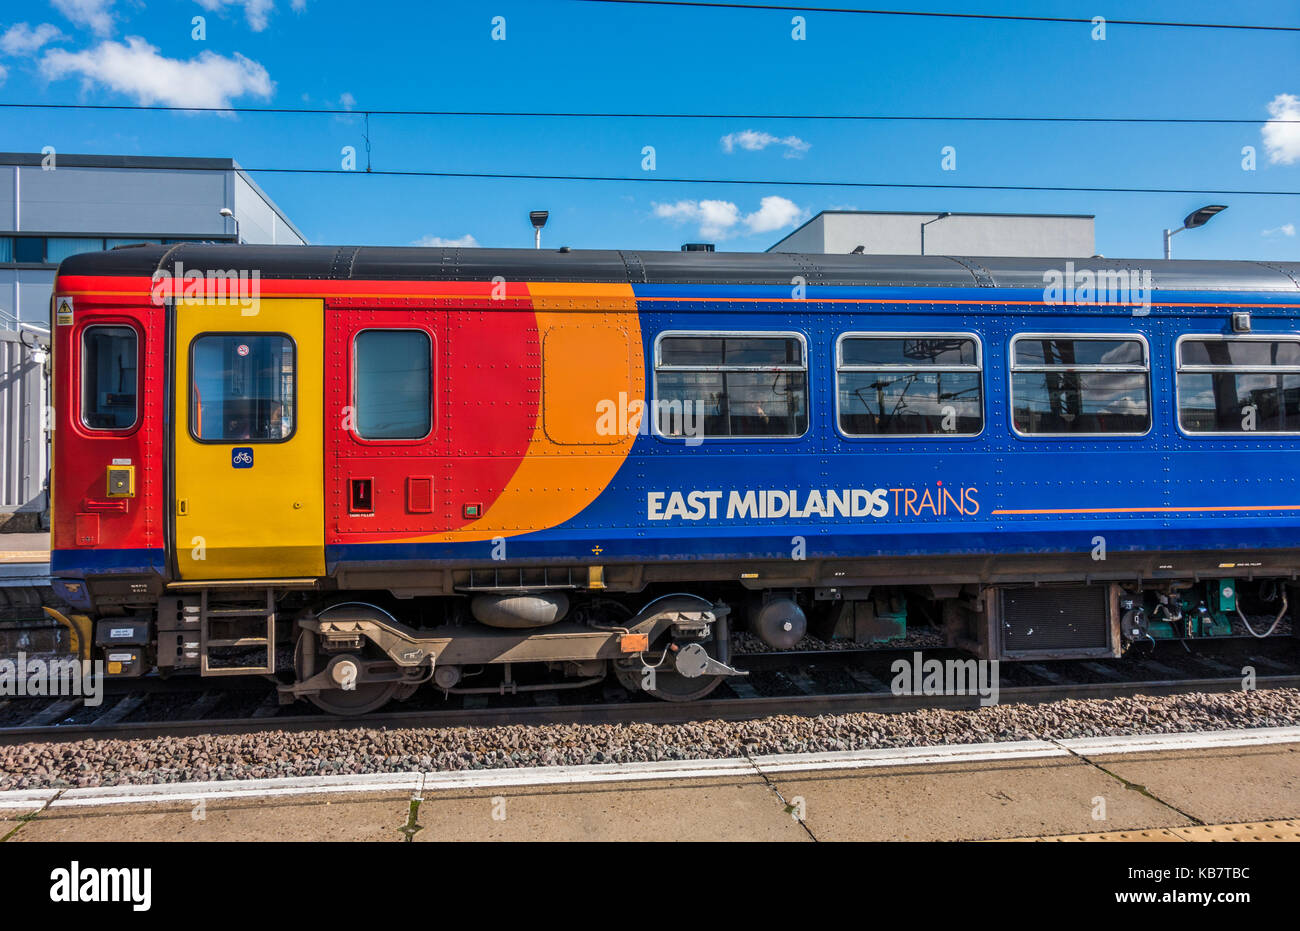 Un East Midlands trains, train, contre un ciel bleu ensoleillé, à une plate-forme à la gare de Peterborough, Cambridgeshire, Angleterre, Royaume-Uni. Banque D'Images